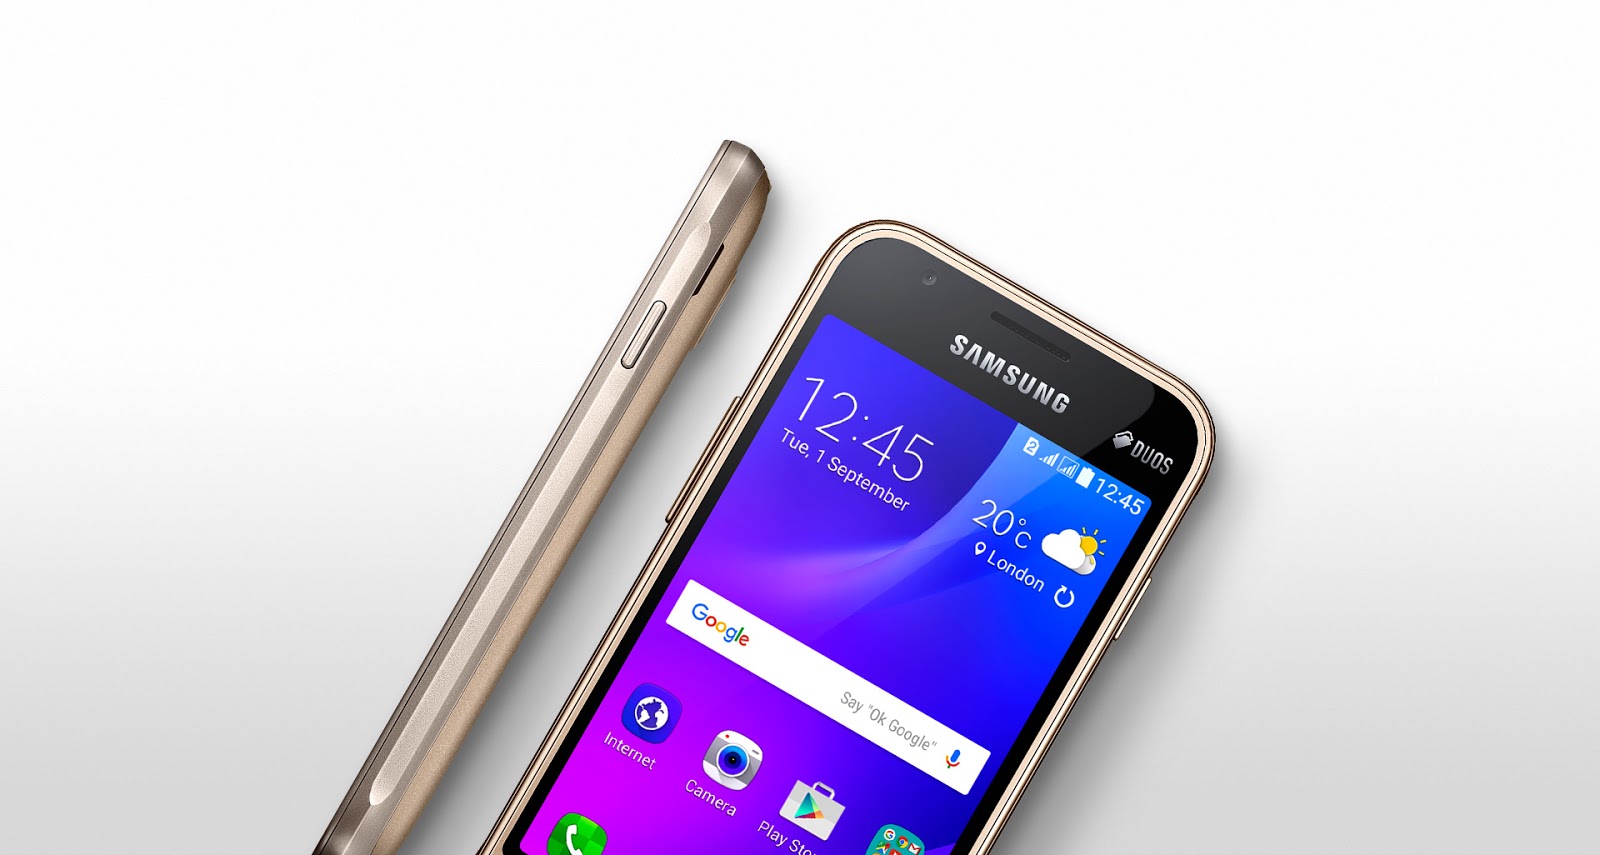  Spesifikasi  dan Harga  Samsung  Galaxy  J1 Mini Hape 4G 1 Jutaan